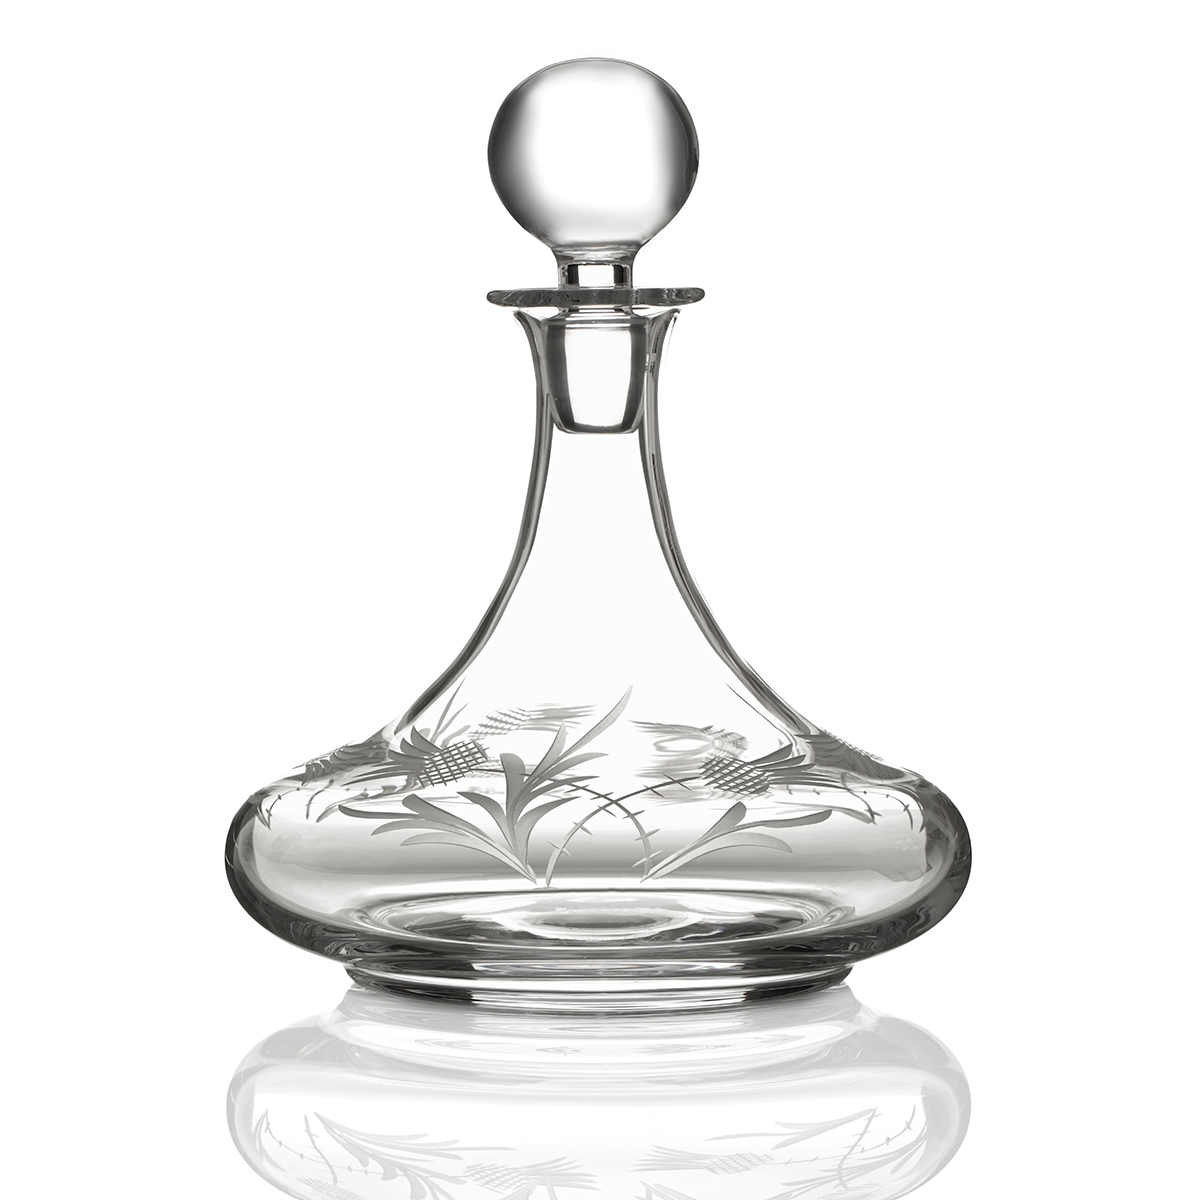 Flower Of Scotland Ships Decanter - handgefertigte Kristallglas Whiskykaraffe mit gravierten Disteln